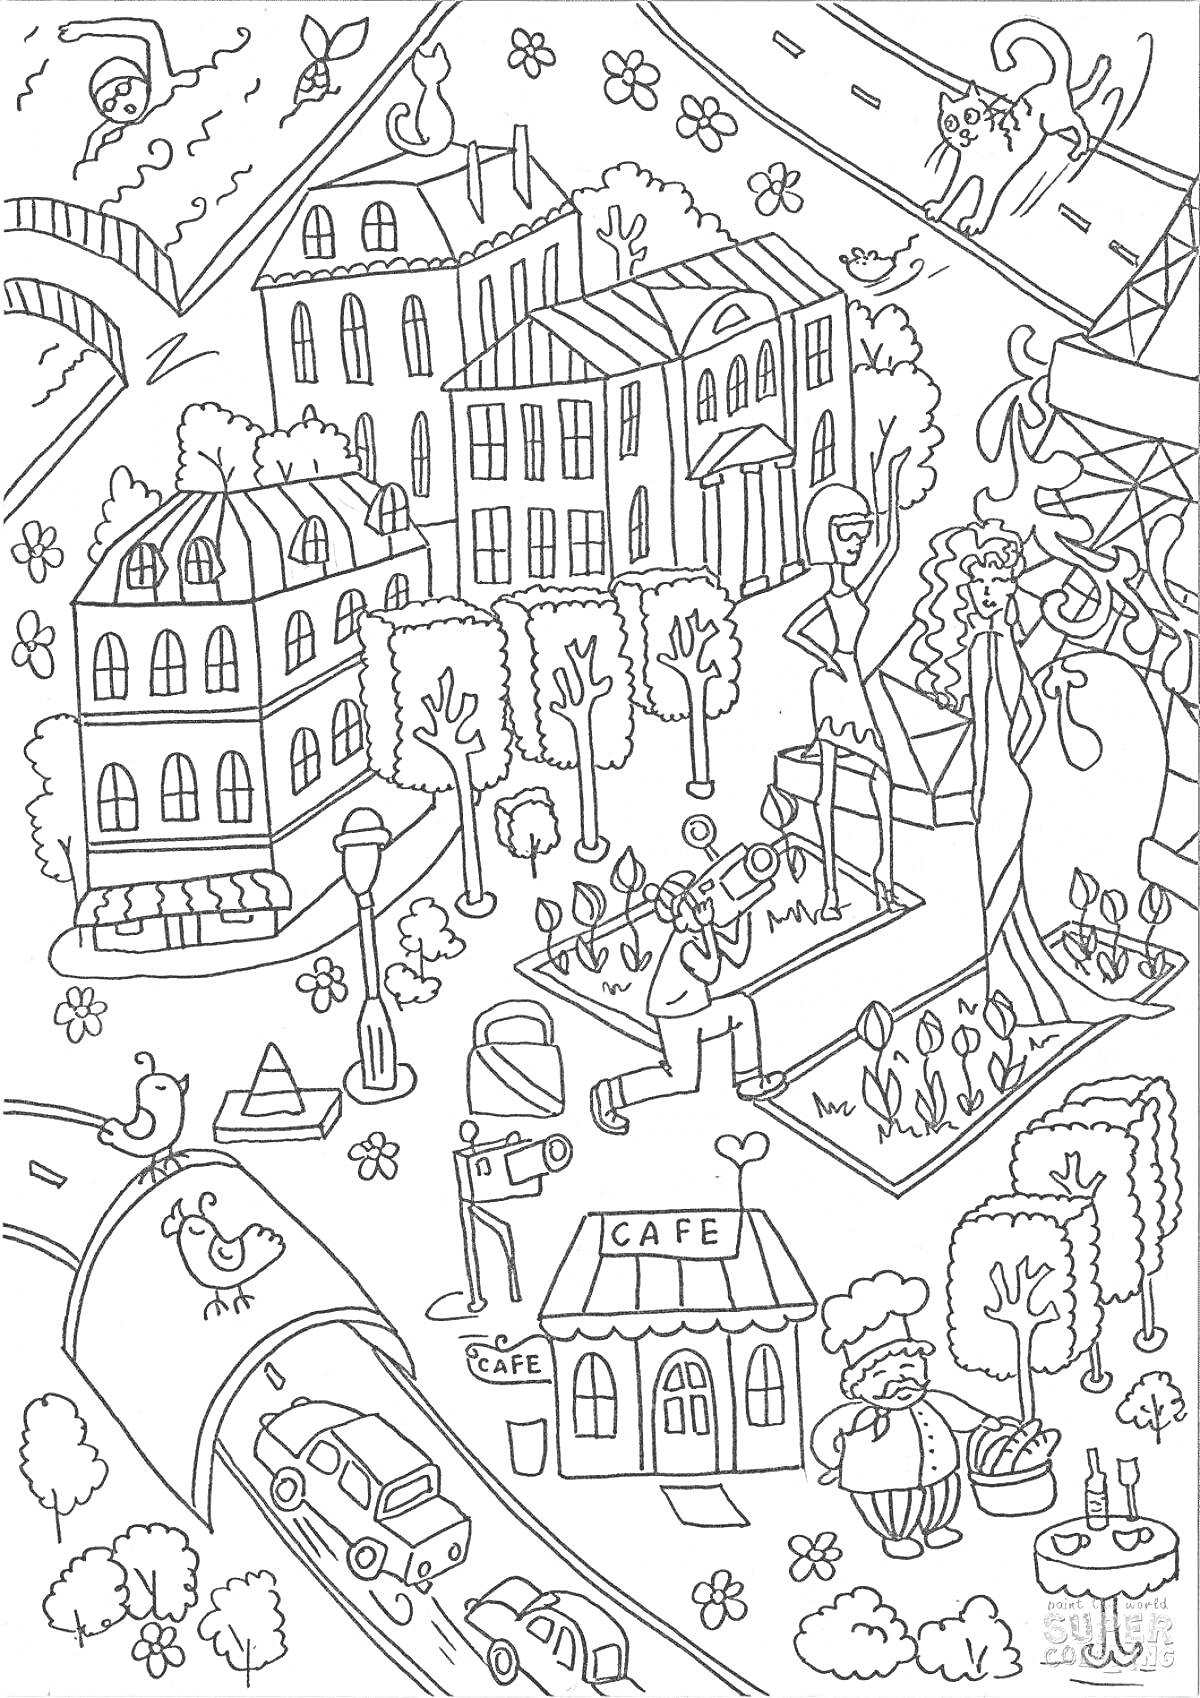 Раскраска Небольшой городок с улицами, зданиями, деревьями, персонифицированными животными и людьми, кафе, статуей, мостом, и машинами